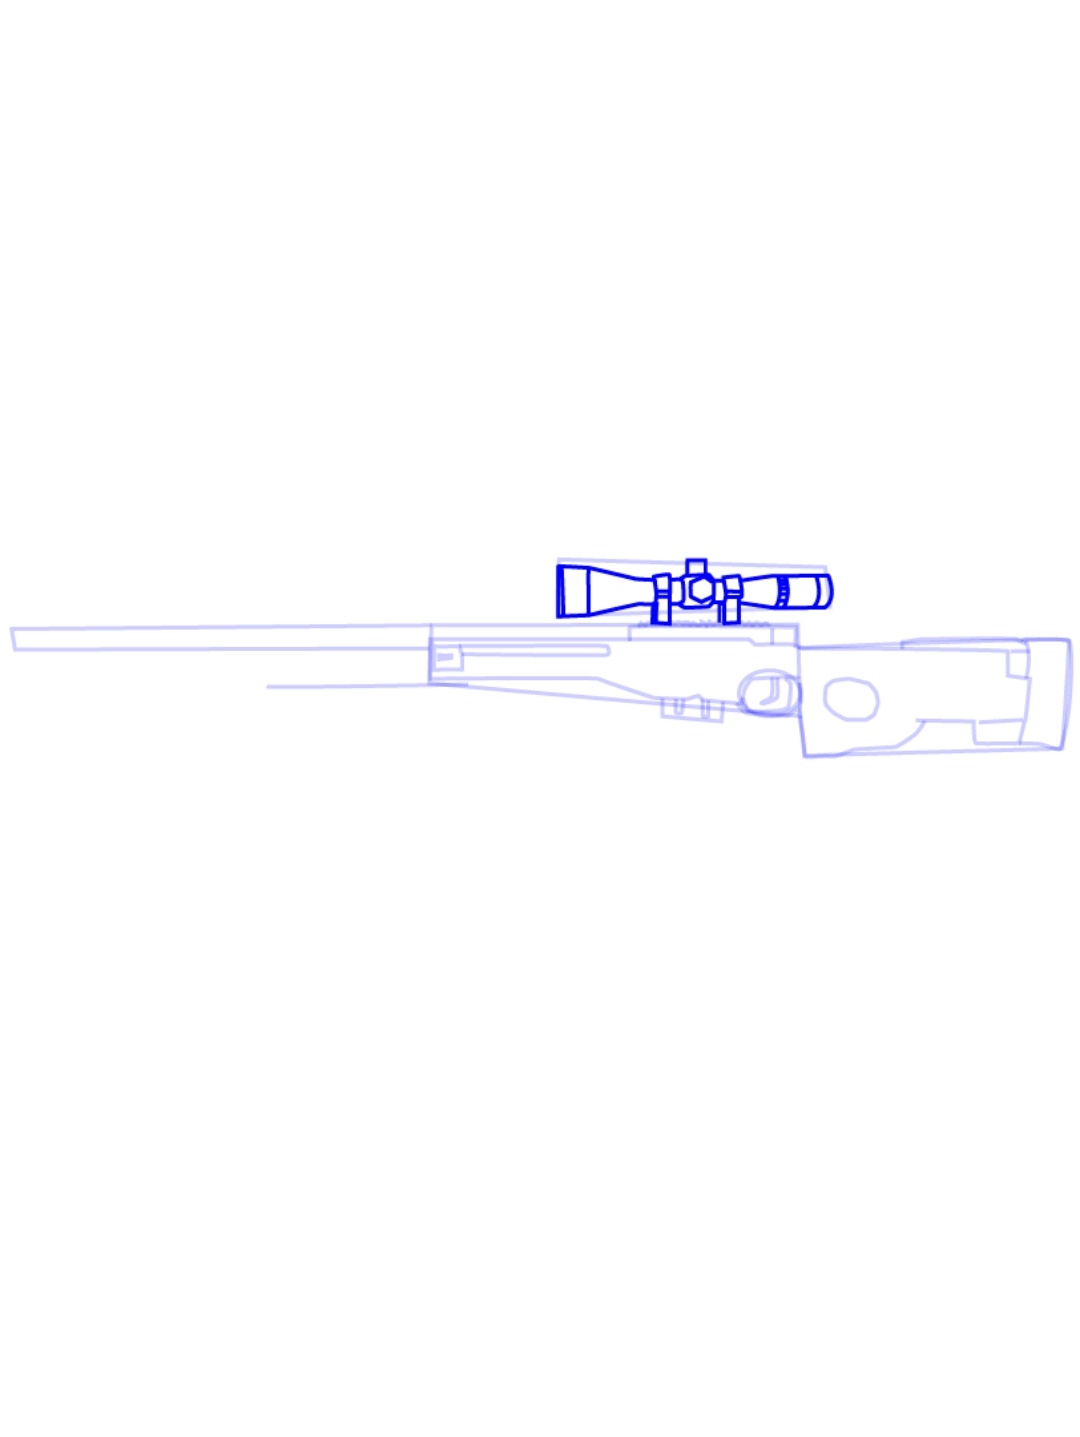 снайперская винтовка awp чертеж фото 74